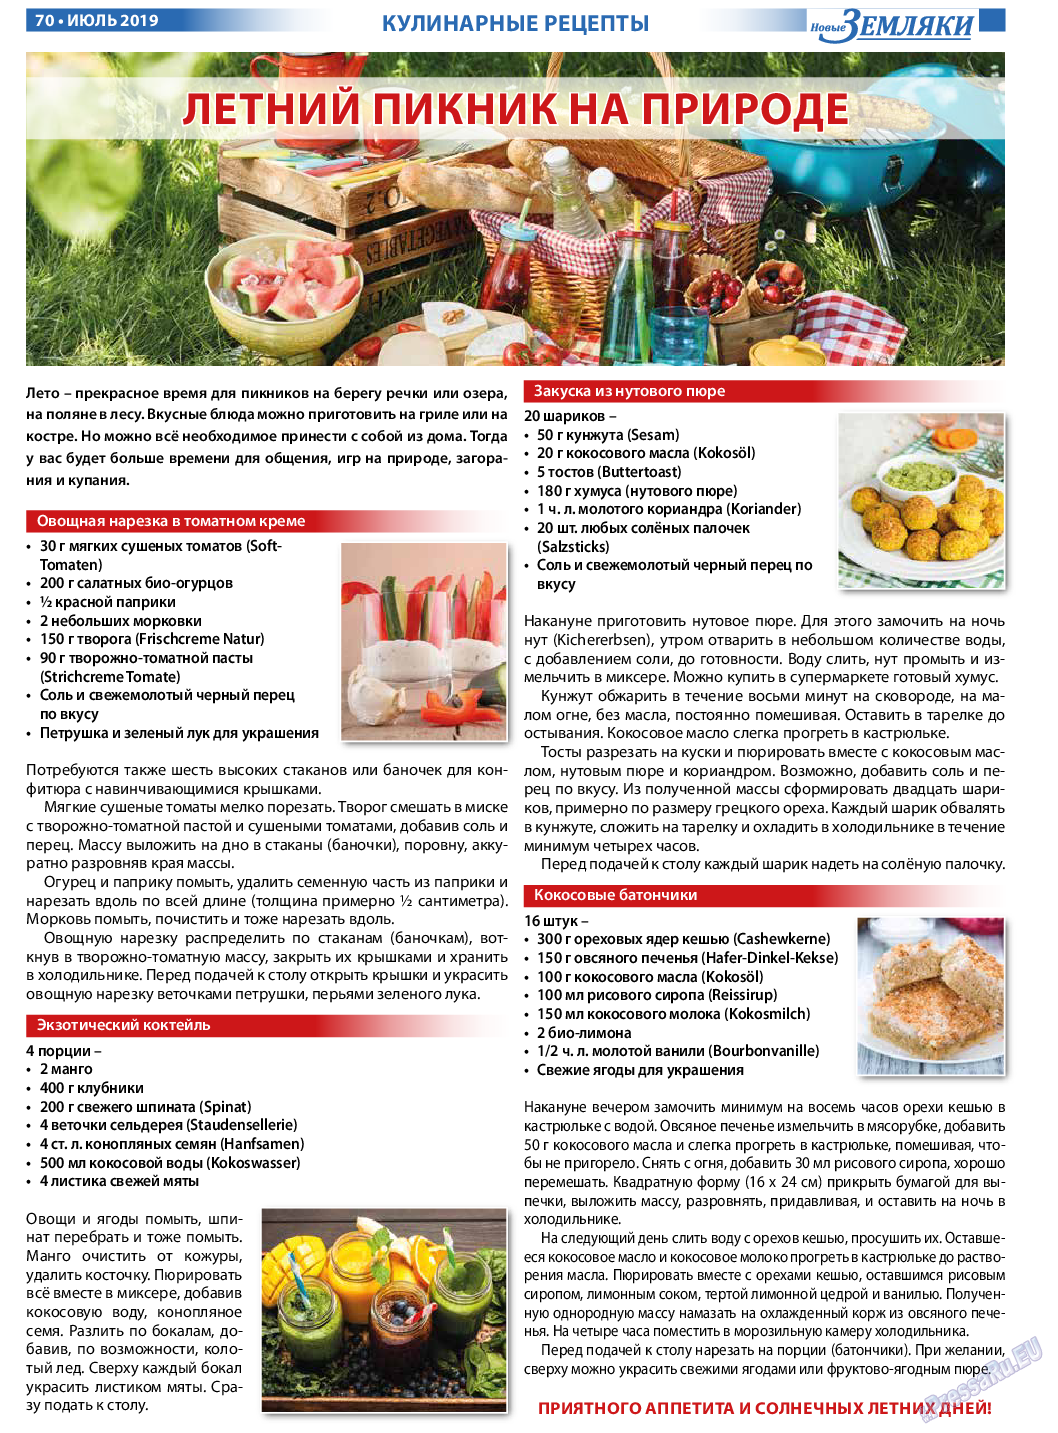 Новые Земляки (газета). 2019 год, номер 7, стр. 70